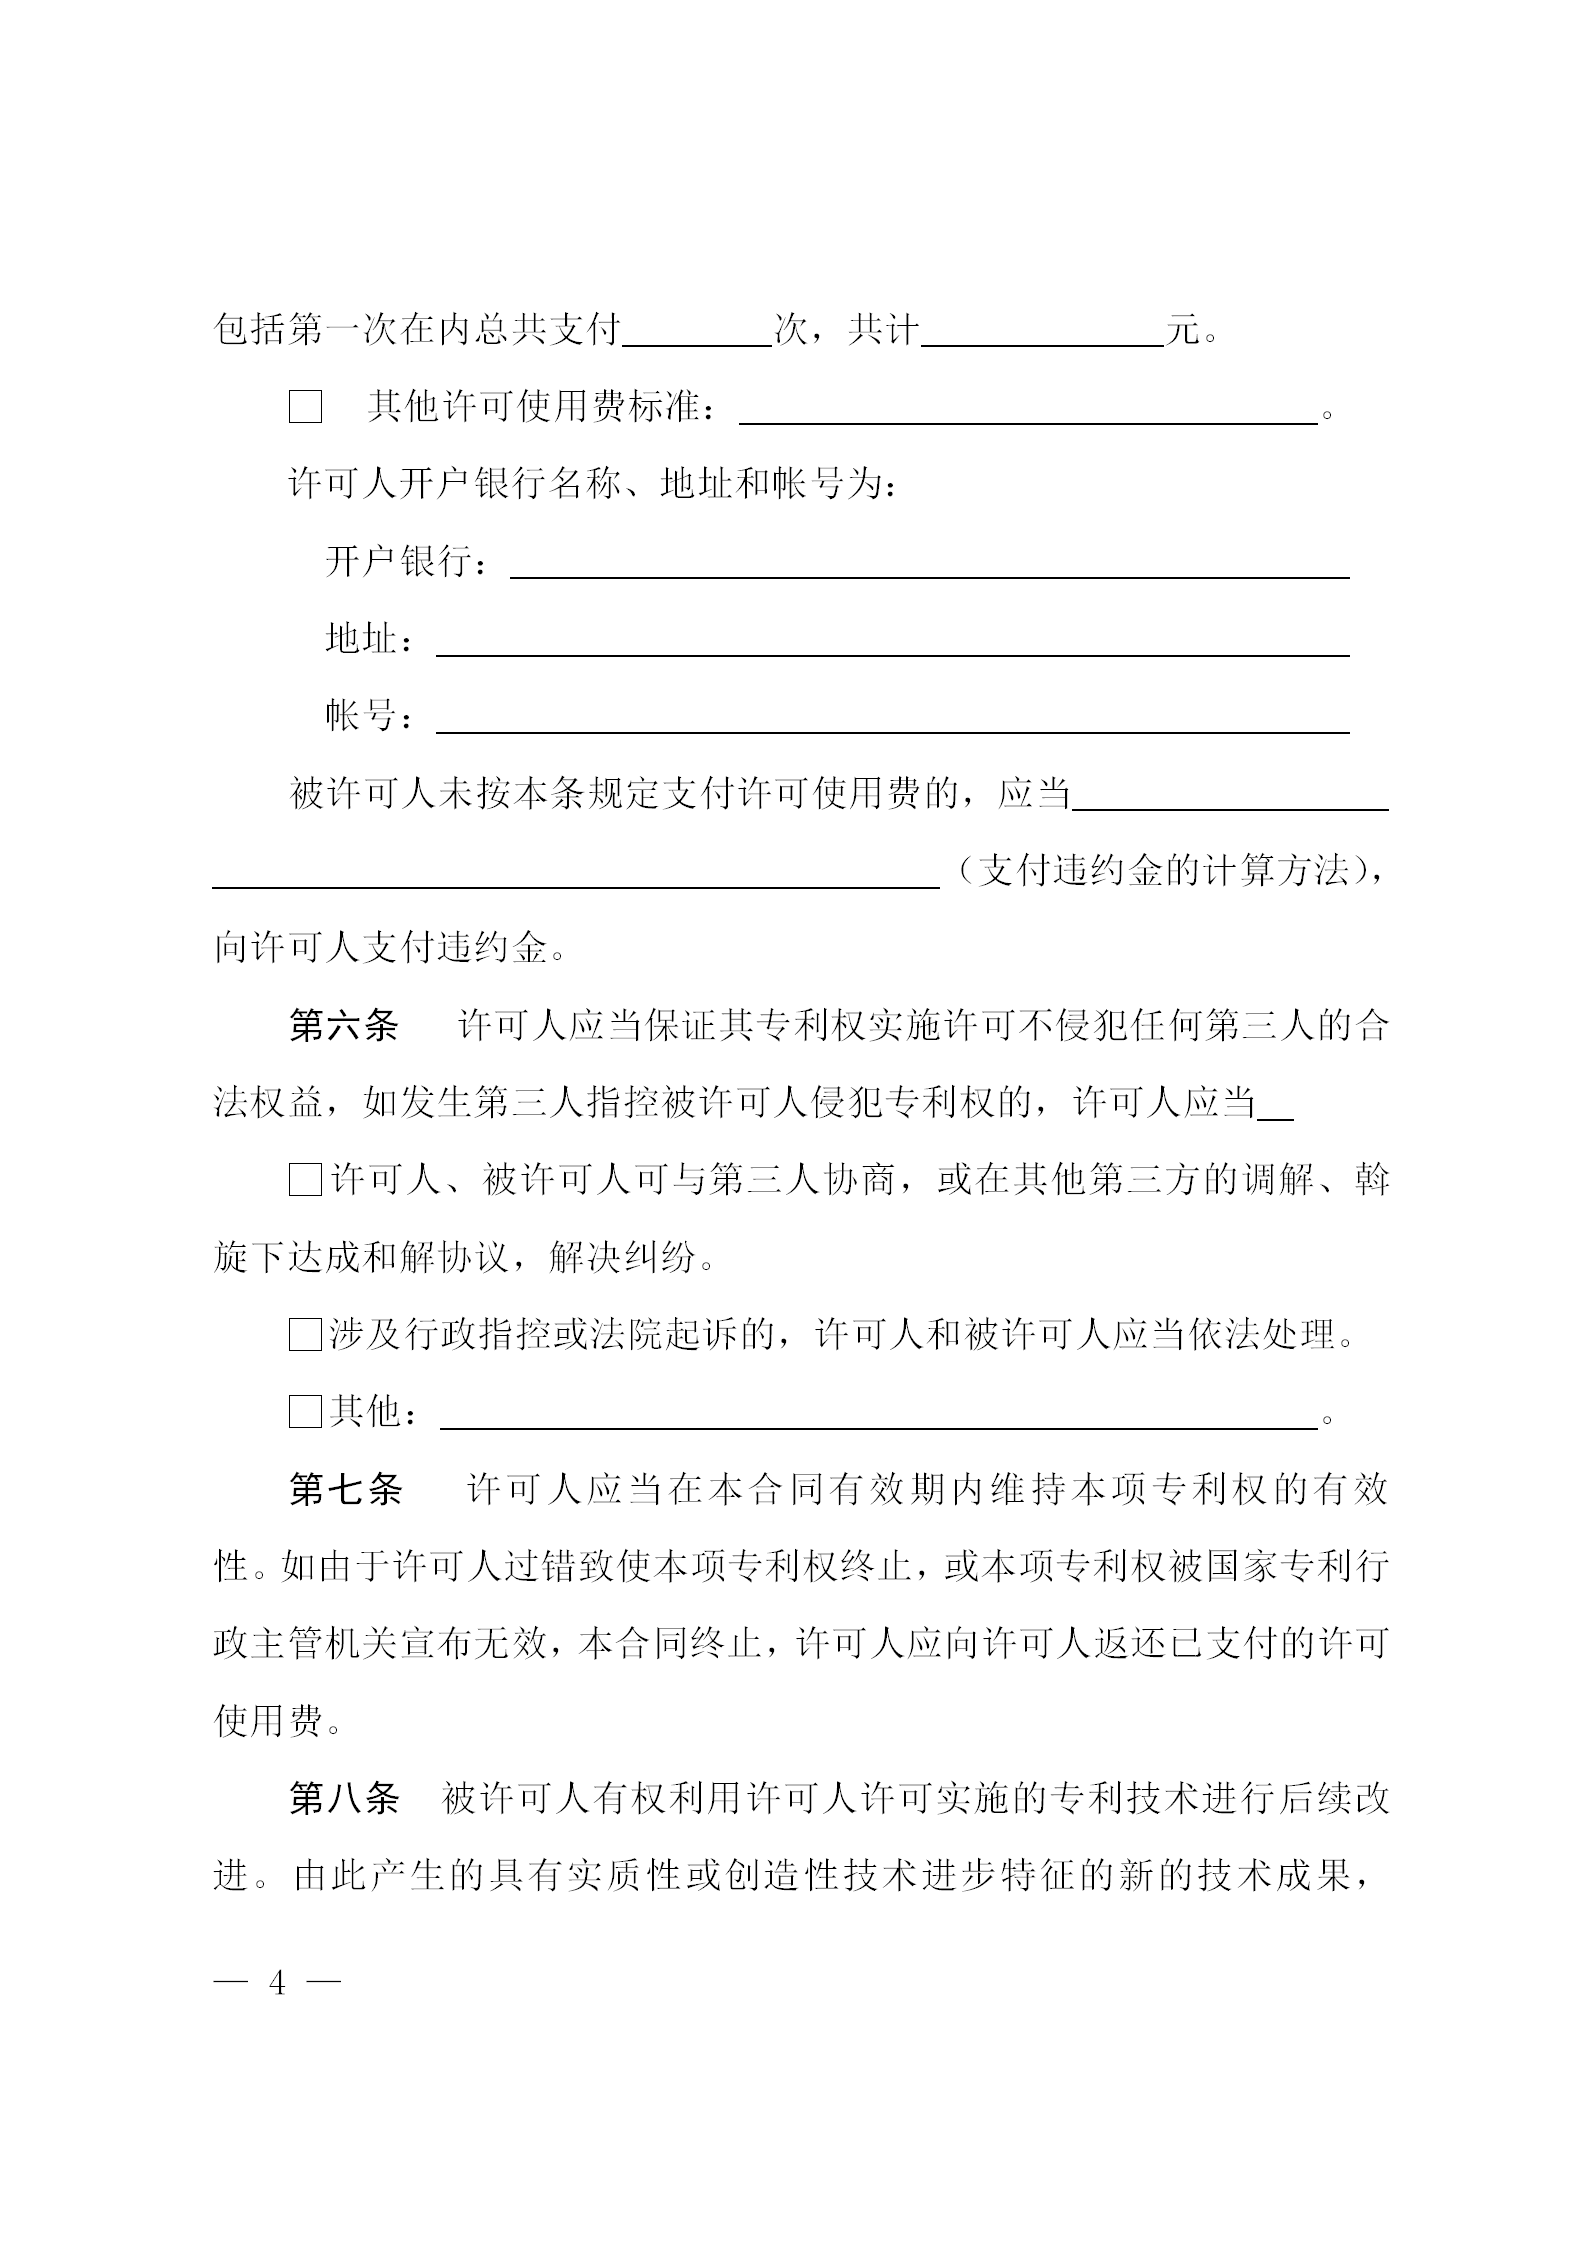 《北京市专利开放许可试点工作方案》全文发布！  ​